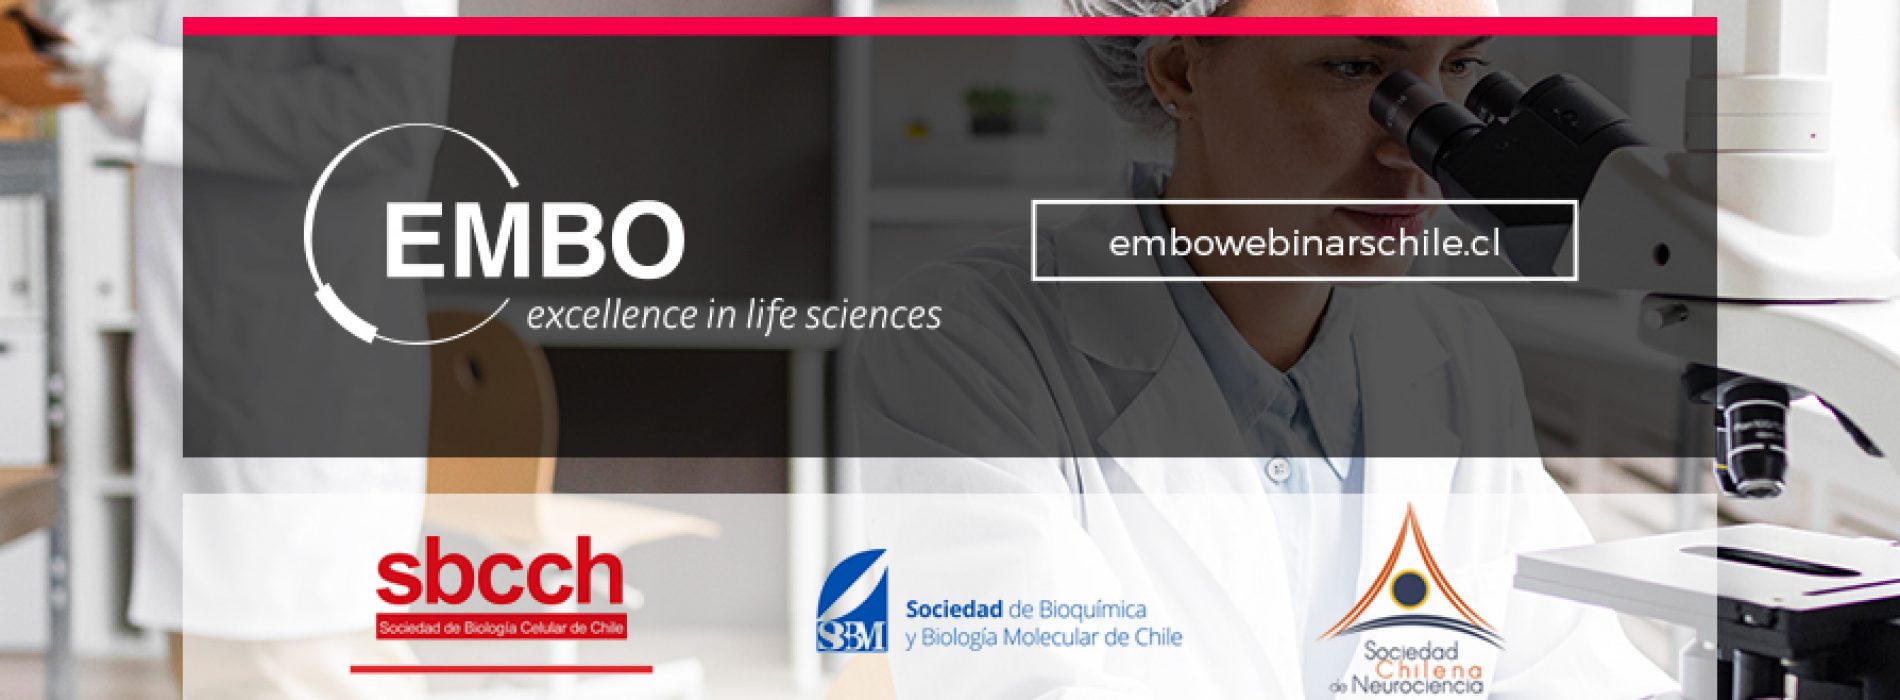 Webinars EMBO / Sociedades Científicas de Chile